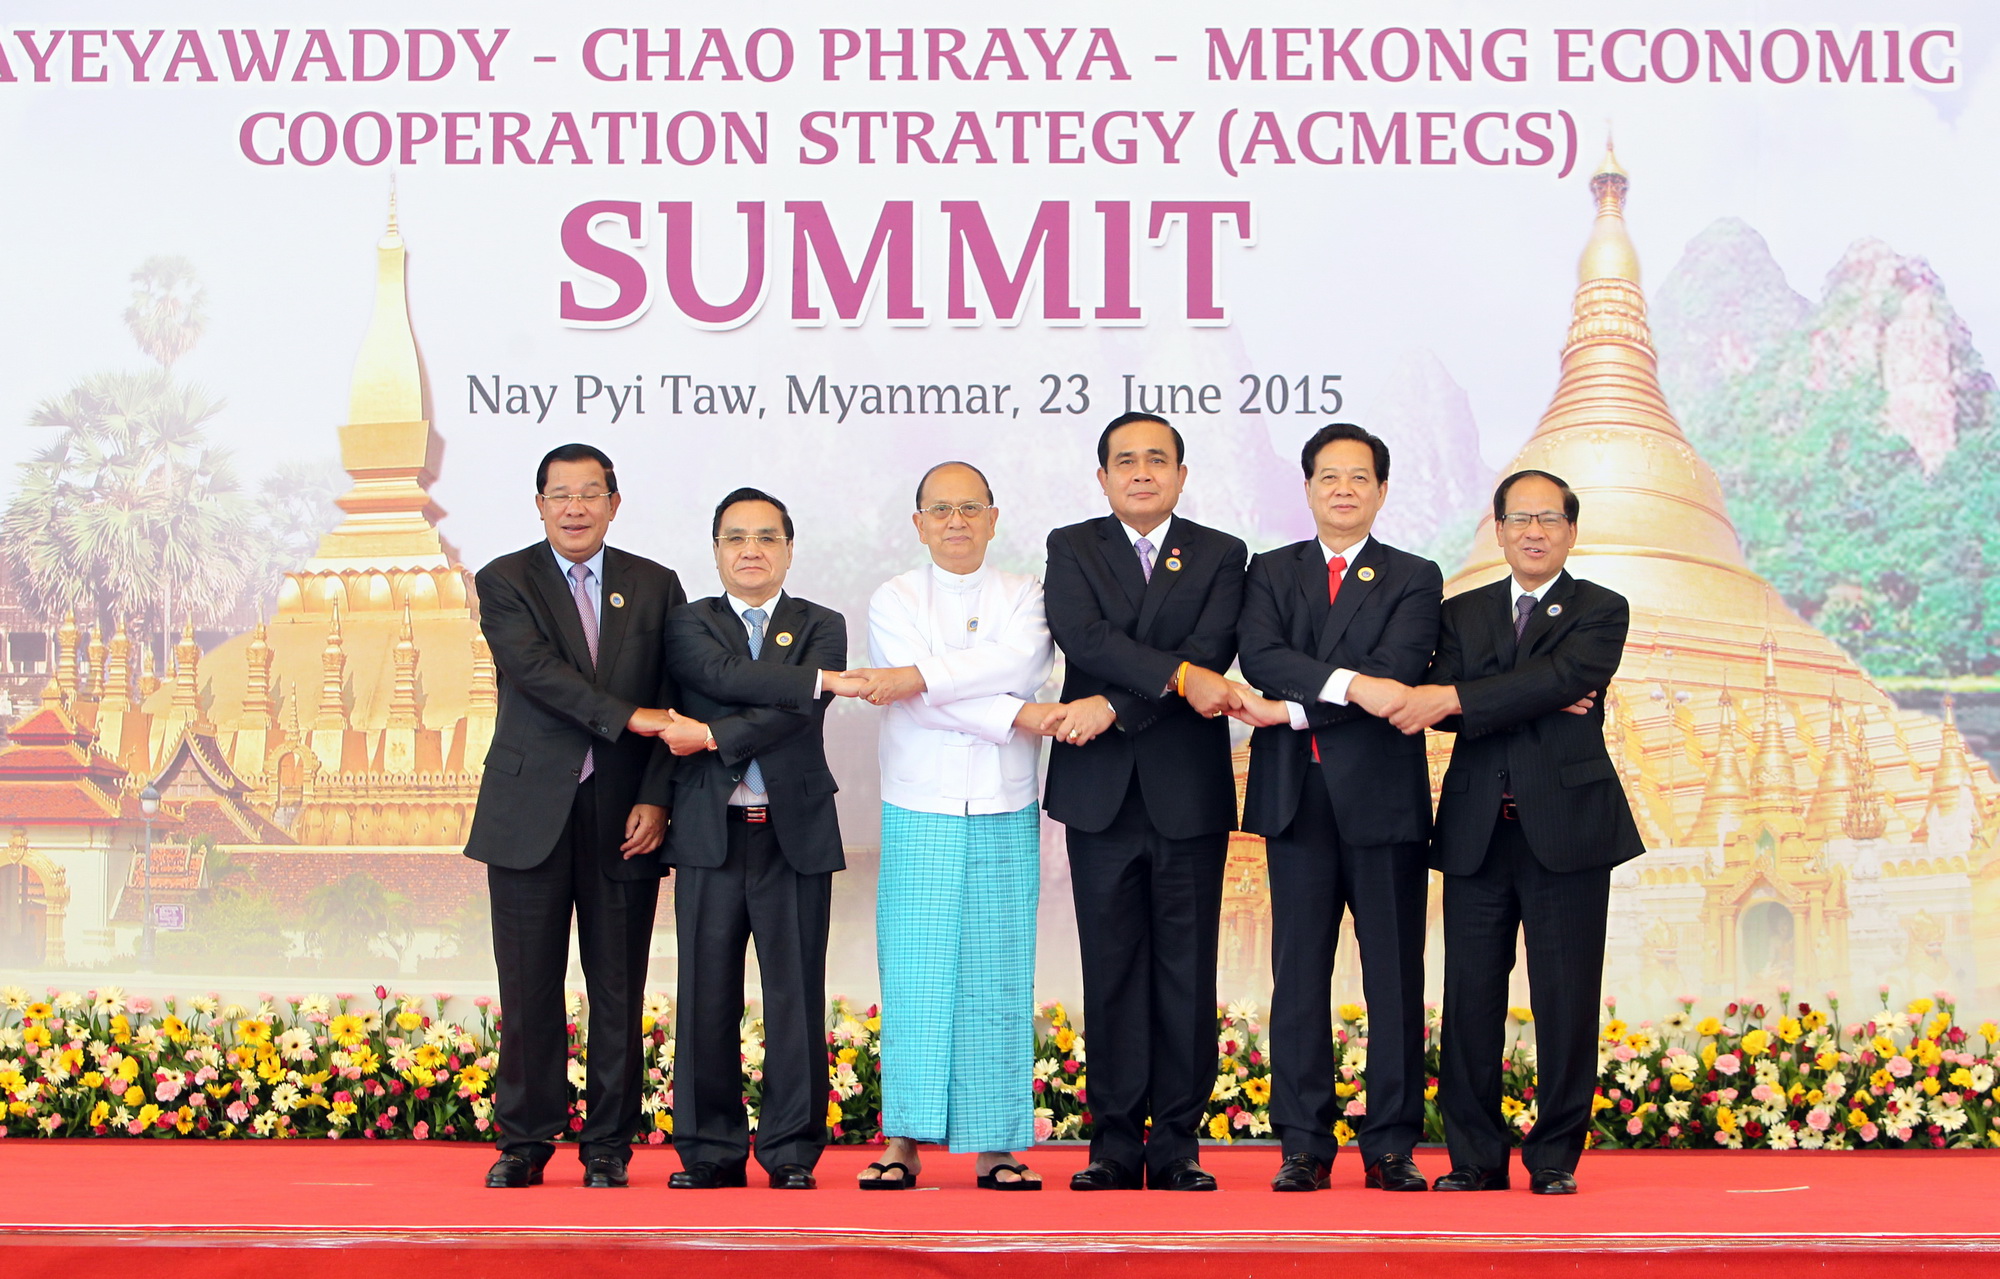 Sáng 23/6/2015, tại Thủ đô Nay Pyi Taw, Myanmar, Thủ tướng Nguyễn Tấn Dũng tham dự Hội nghị Cấp cao Chiến lược Hợp tác Kinh tế Ayeyawady-Chao Phraya-Mekong lần thứ 6 (ACMECS 6) tại Nay Pyi Taw. Trong ảnh: Các Trưởng đoàn chụp ảnh chung. (Ảnh: Đức Tám/TTXVN)